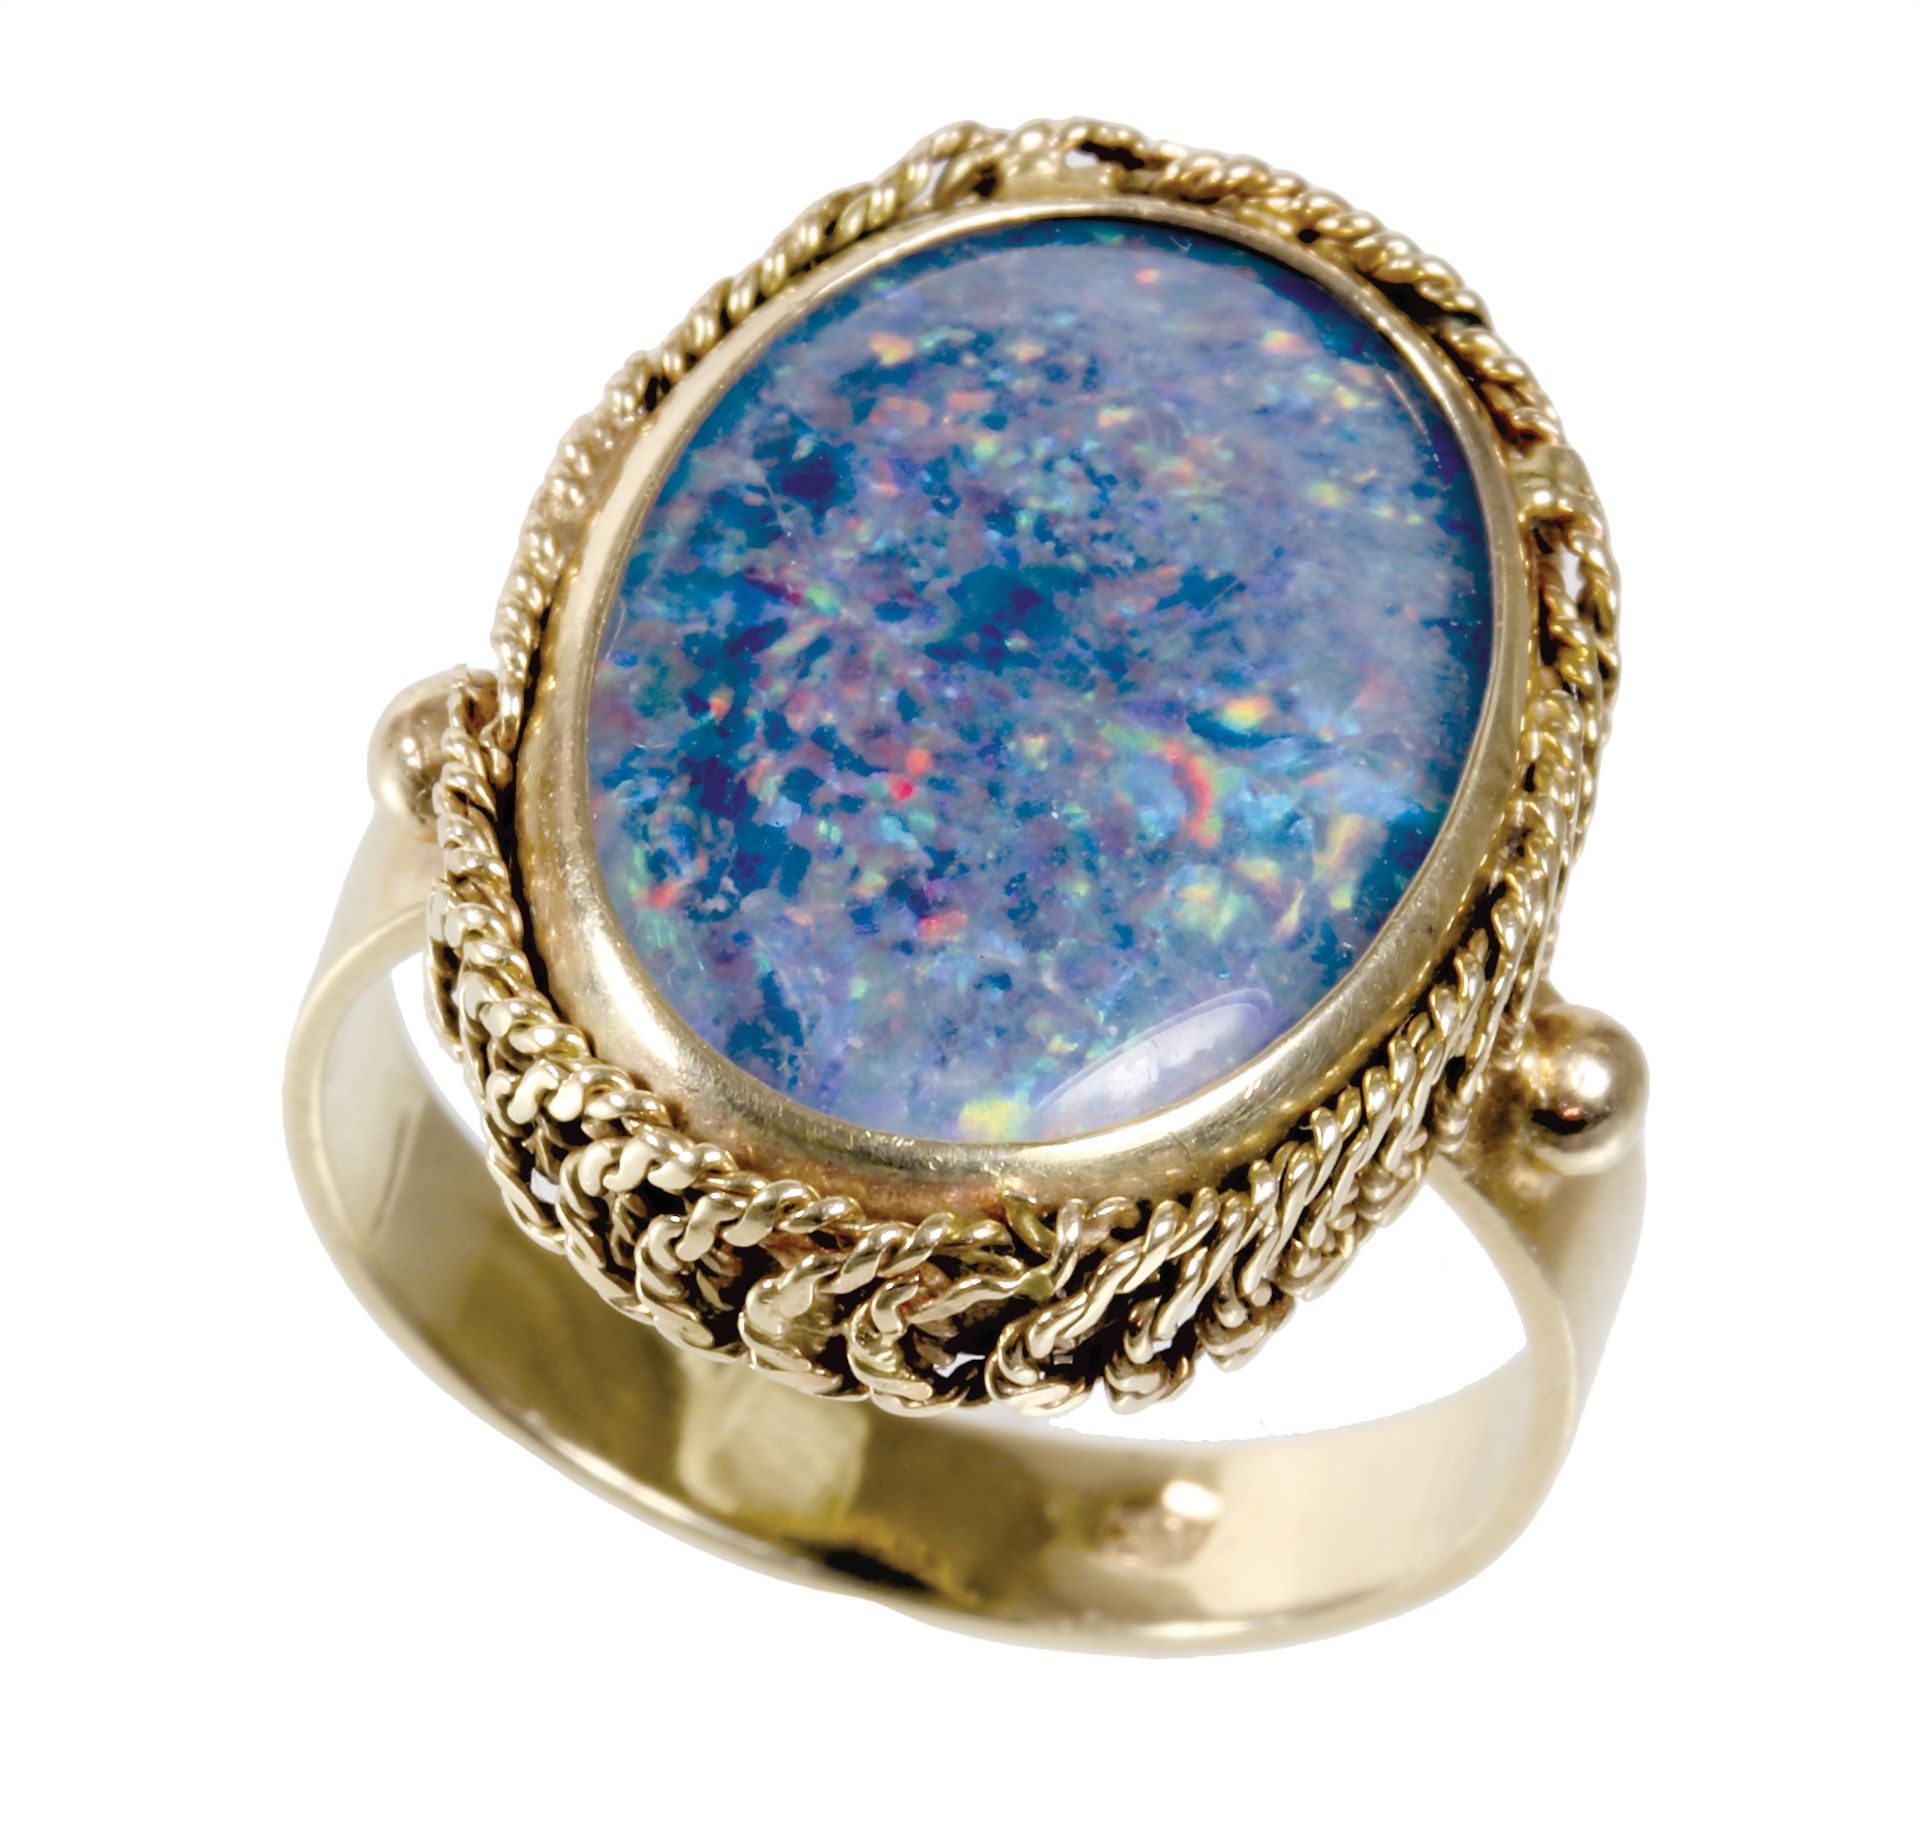 Ring, GG 585/000, Opaldoublette in vorwiegend blau, rot und grünen Farbtönen, Ringkopf ca. ...